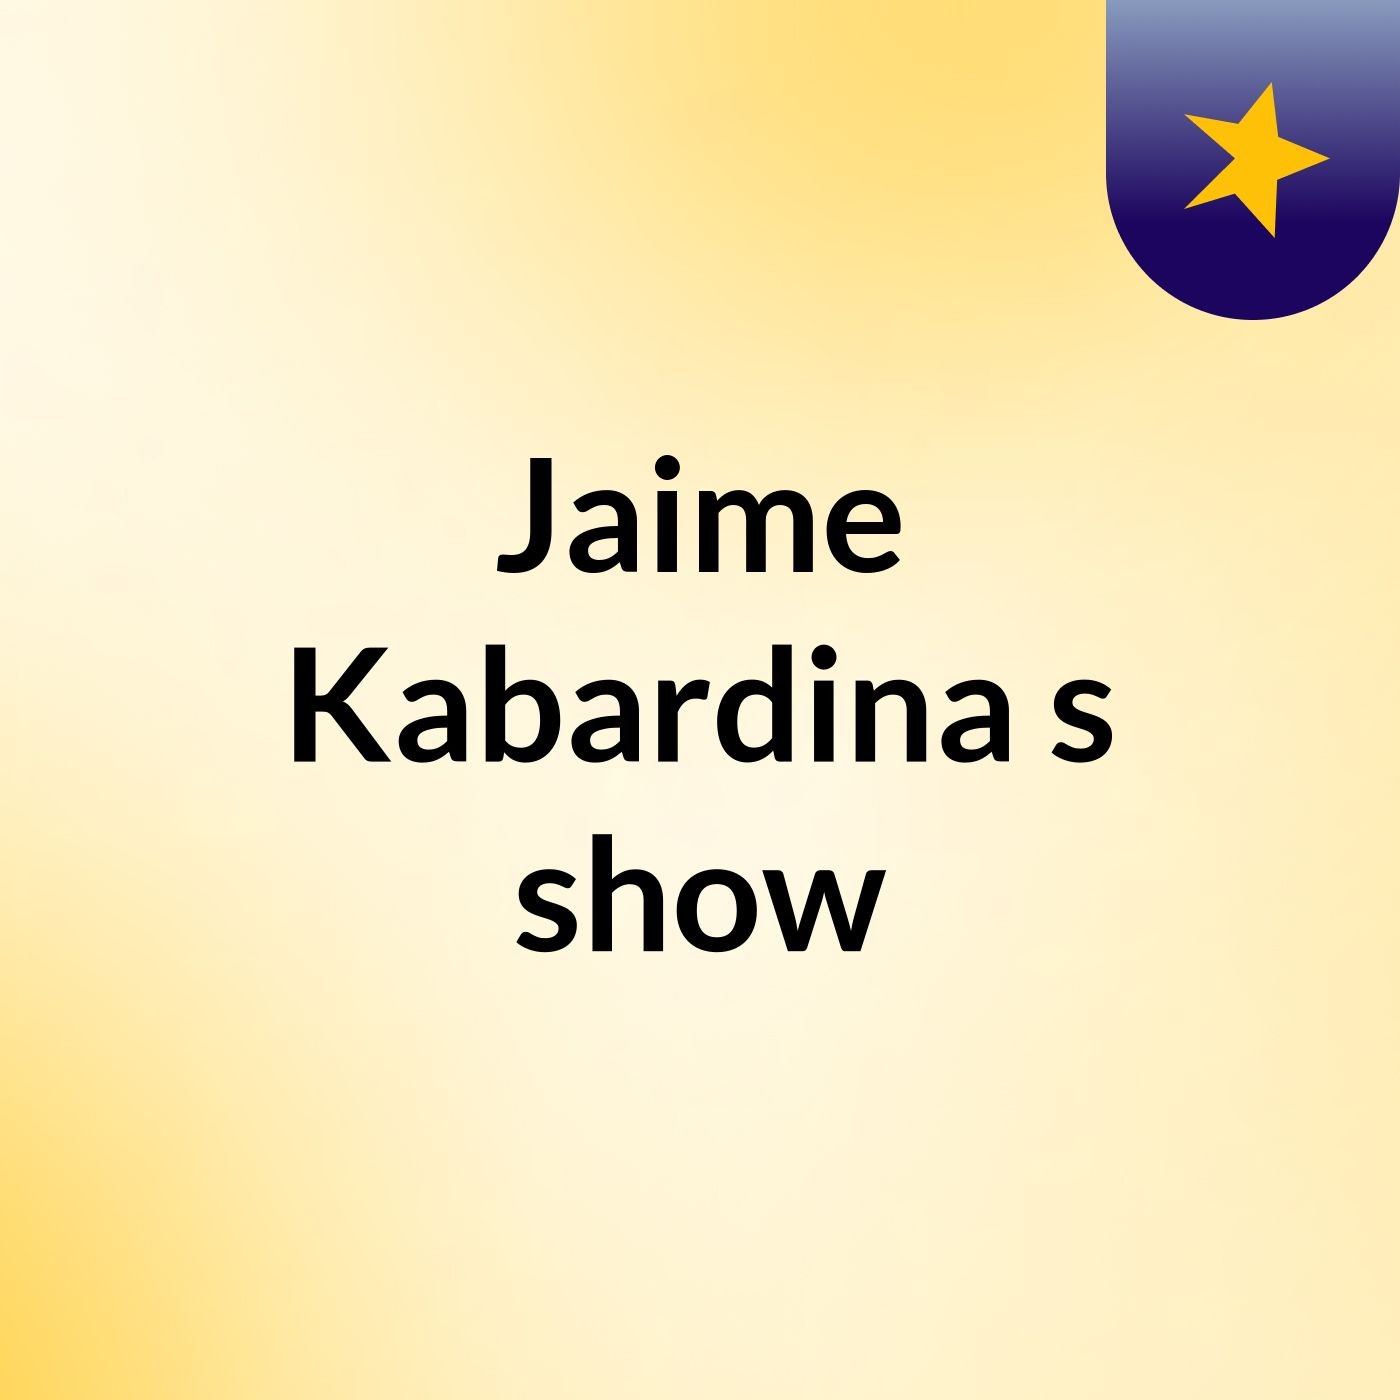 Jaime Kabardina's show